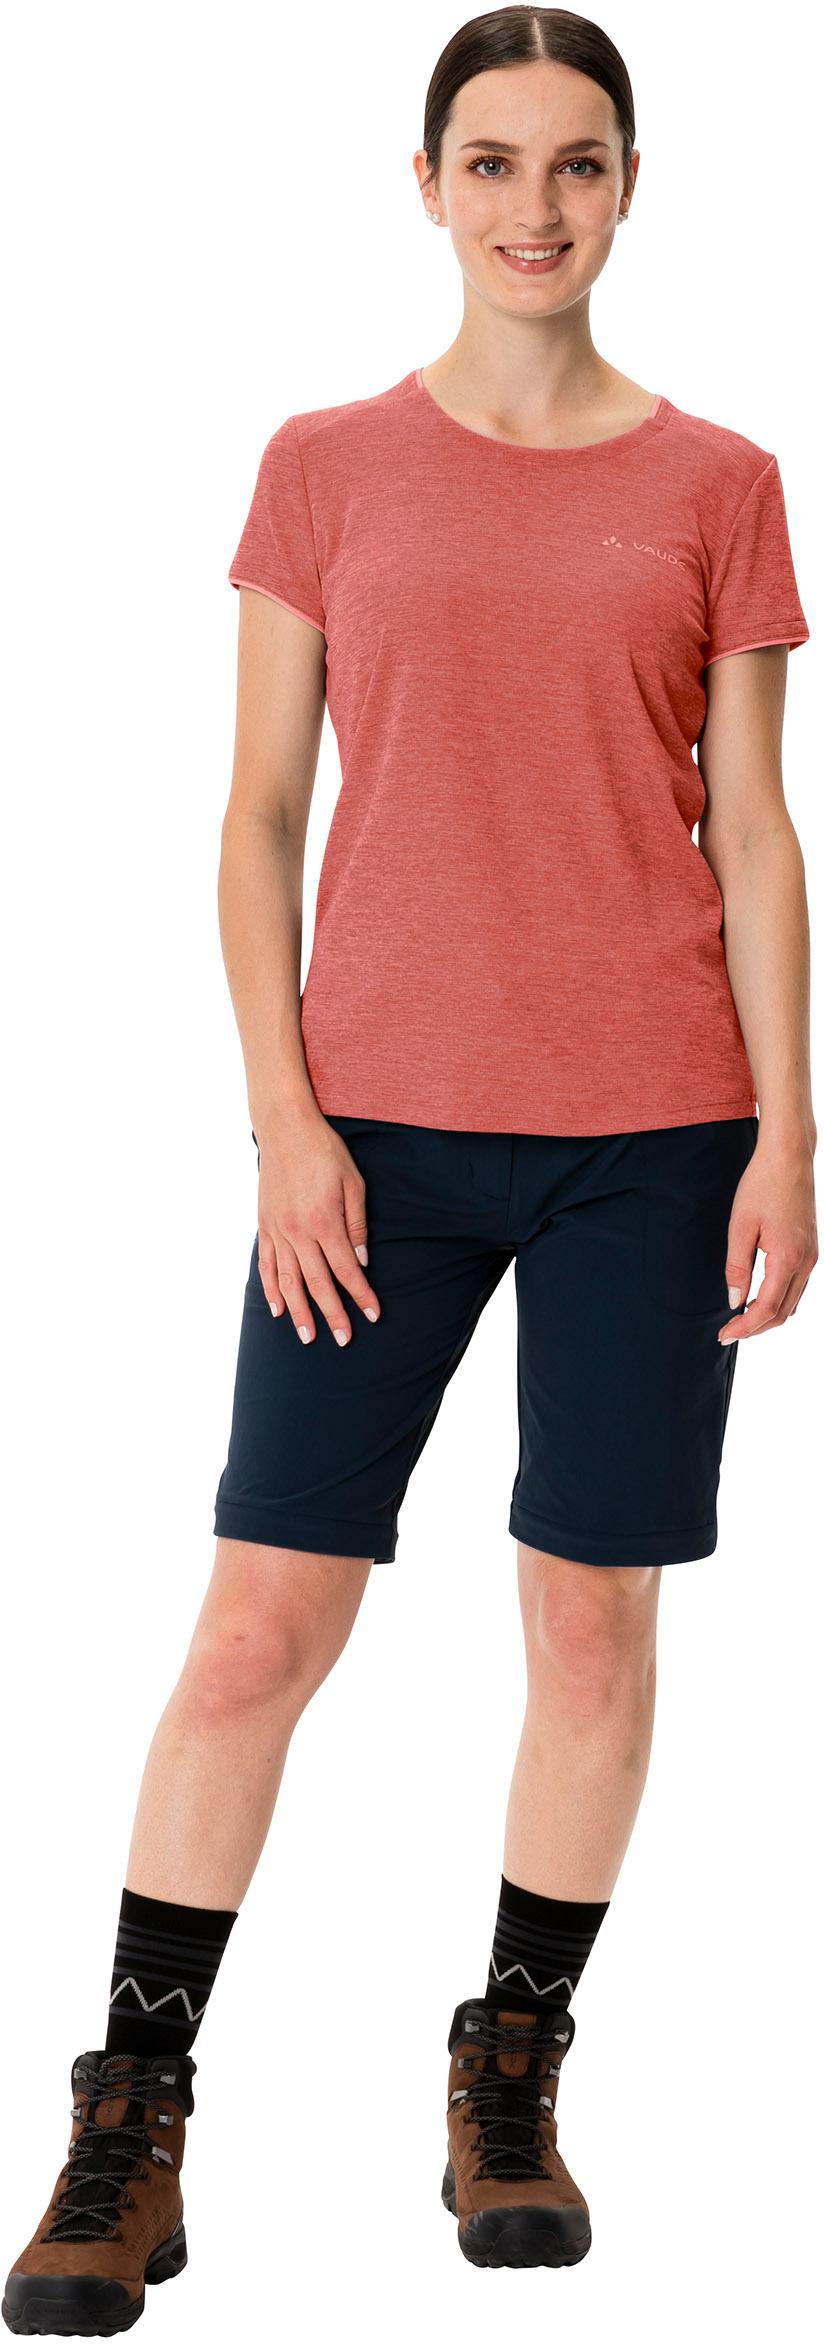 Damen Funktionsshirt im Essential Online Shop von SportScheck kaufen hotchili VAUDE